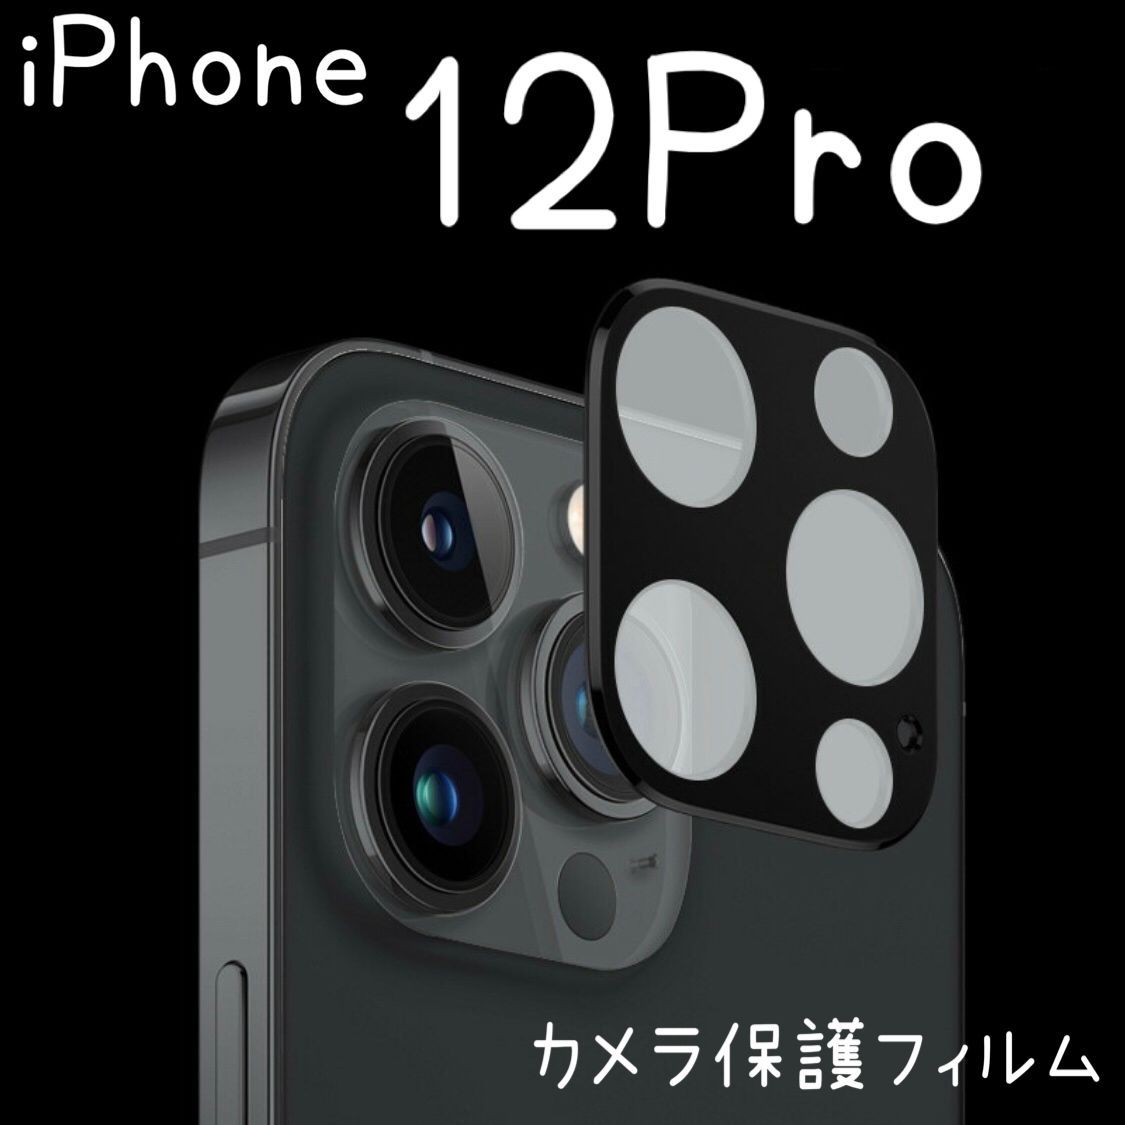 カメラカバー レンズ保護 ガラスフィルム iPhone12PRO アイフォンレンズカバー 全面カメラレンズ保護 強化ガラスフィルム 保護フィルム  ブラック ゴールド シルバー iPhone12pro カメラフィルム Yアクセショップ メルカリ